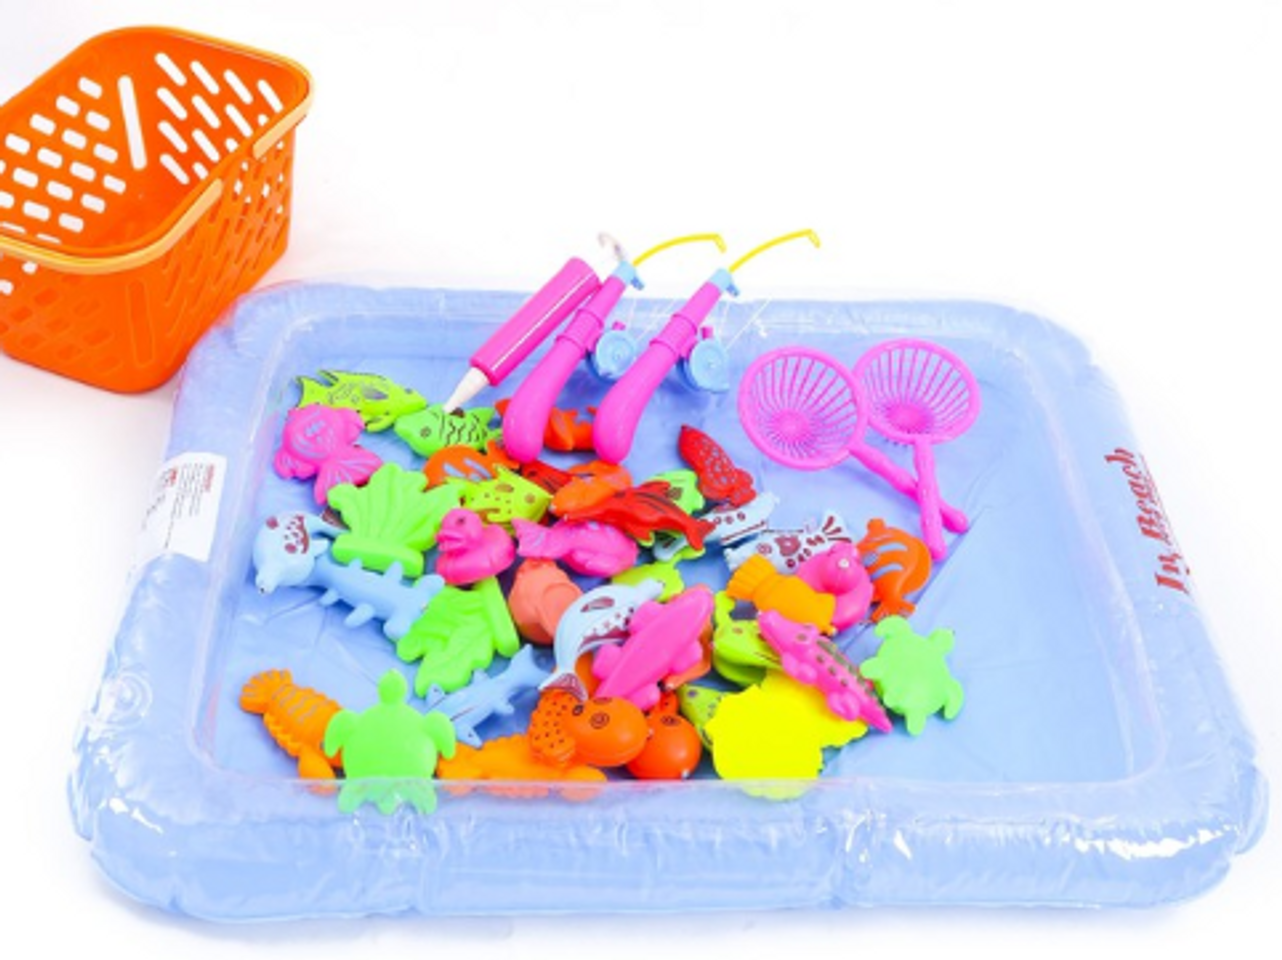 Bộ đồ chơi phao câu cá được làm từ nhựa nguyên sinh rất an toàn cho trẻ